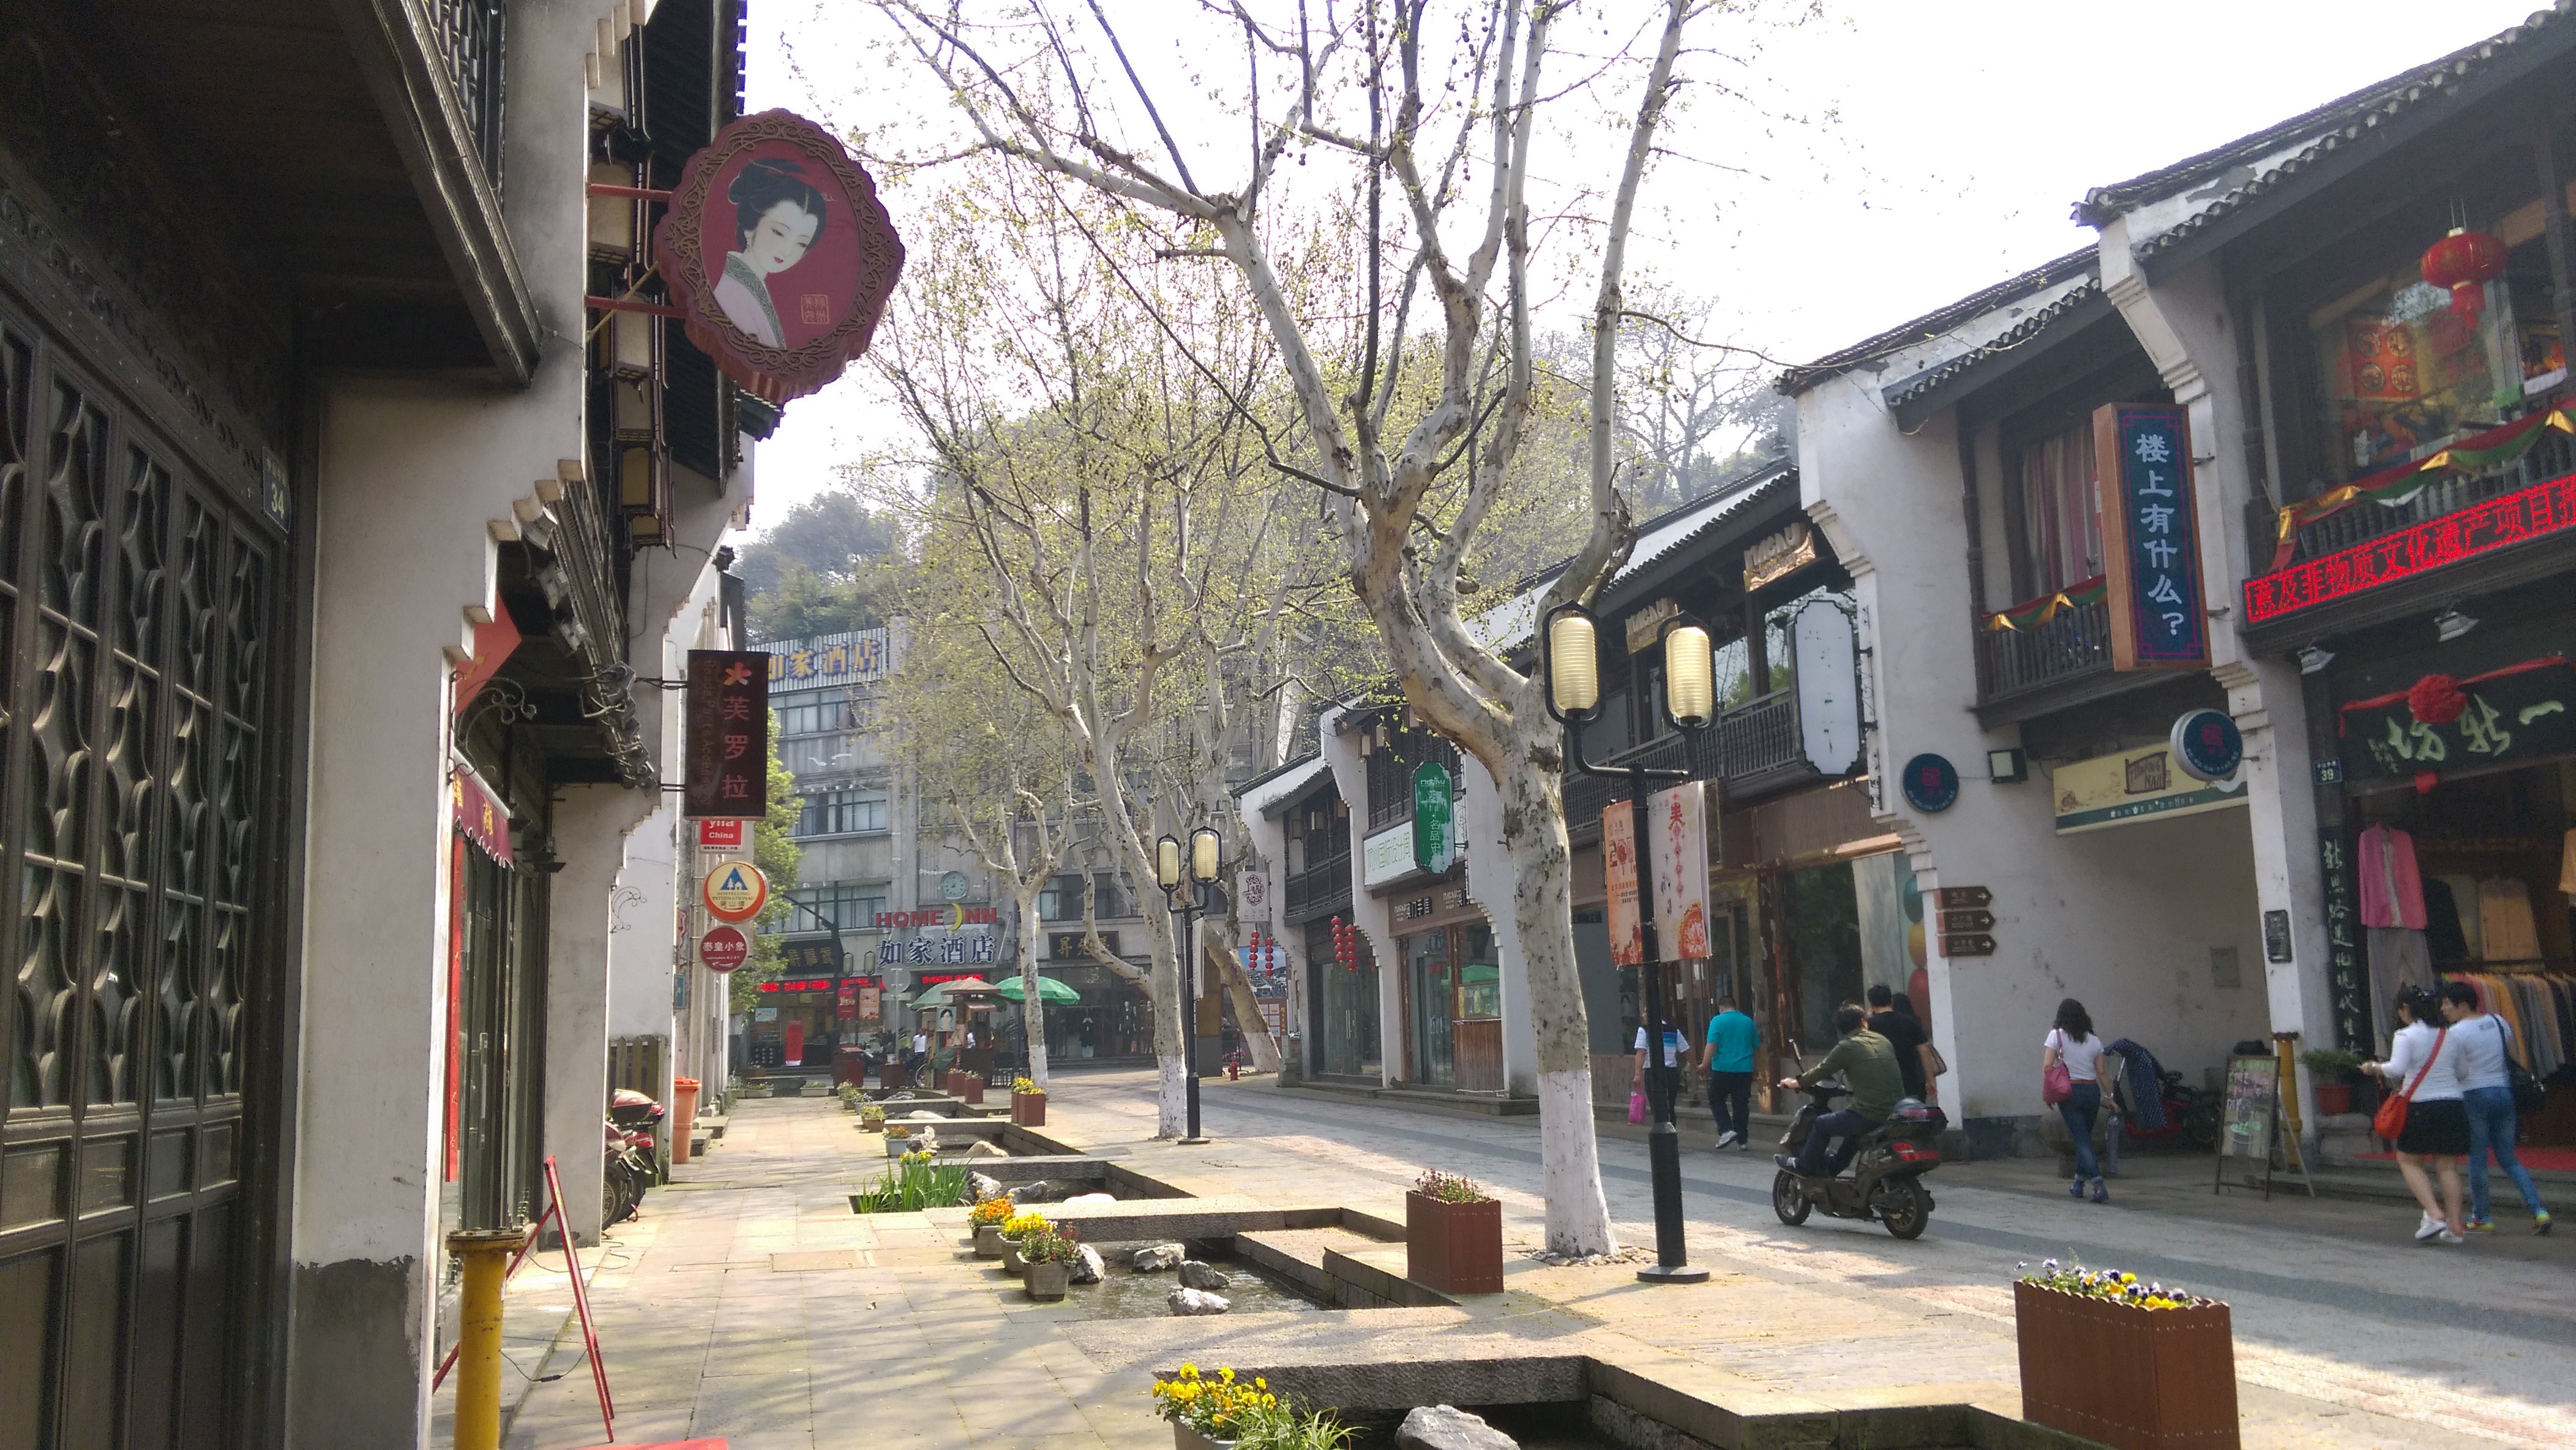 【携程攻略】杭州清河坊街适合单独旅行旅游吗,清河坊